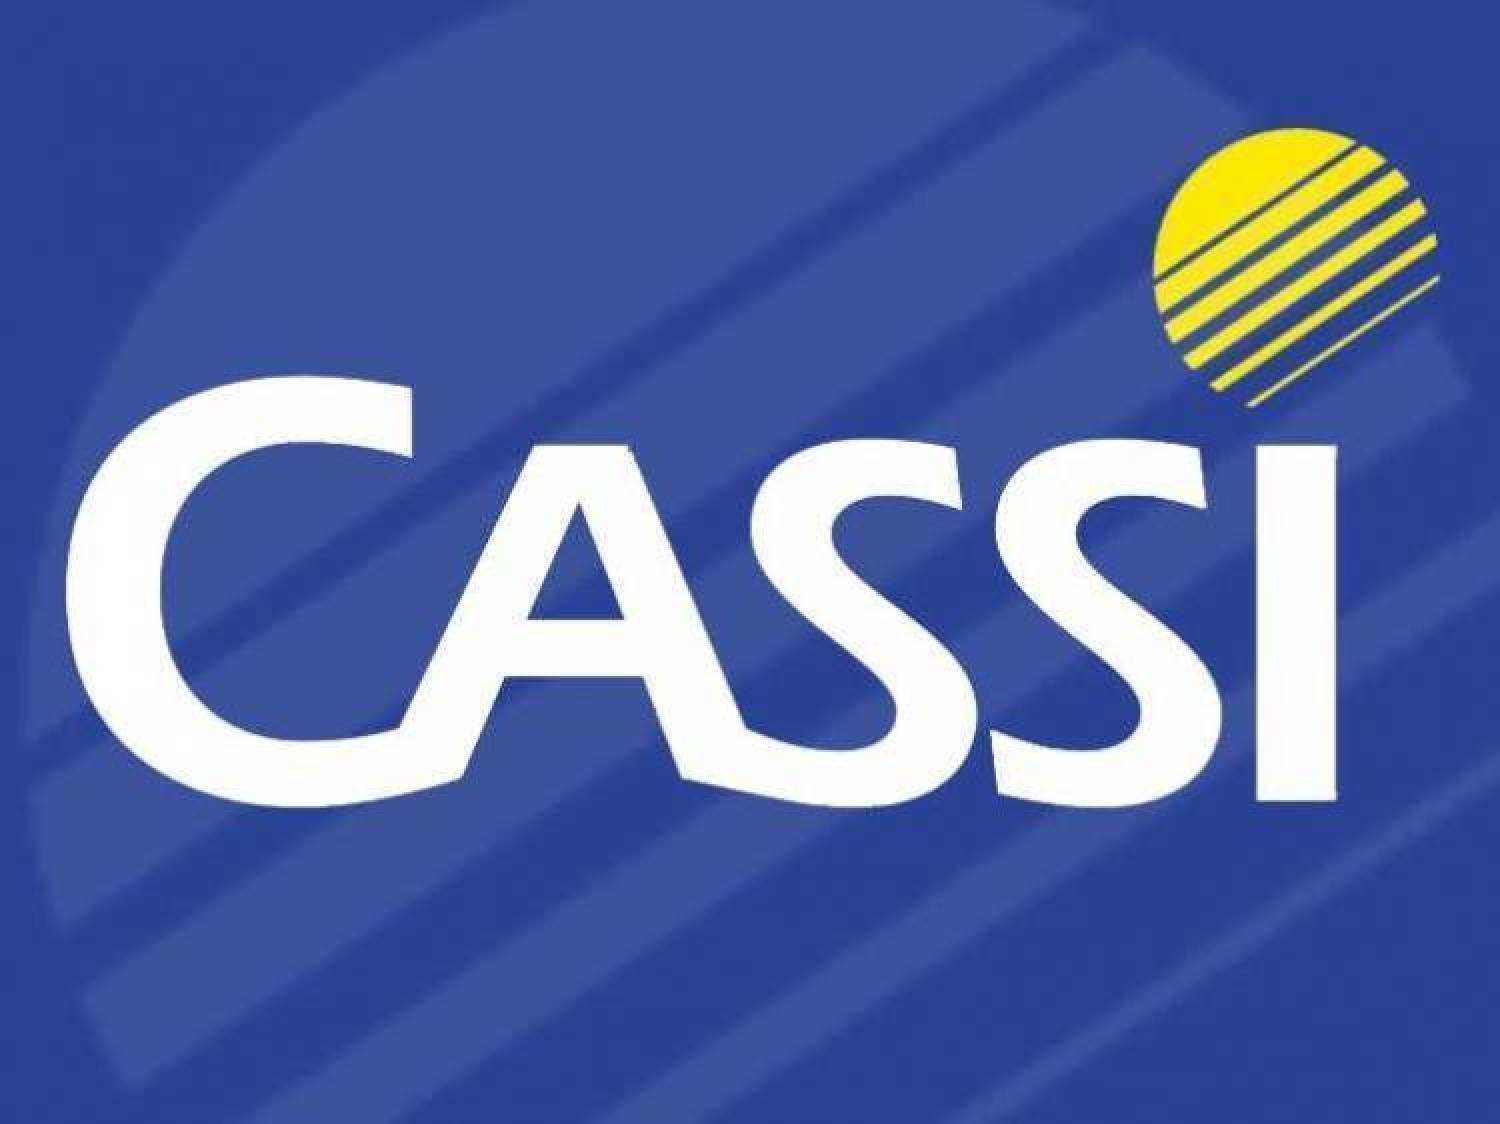 CASSI Urgente: BB ainda não marcou negociação